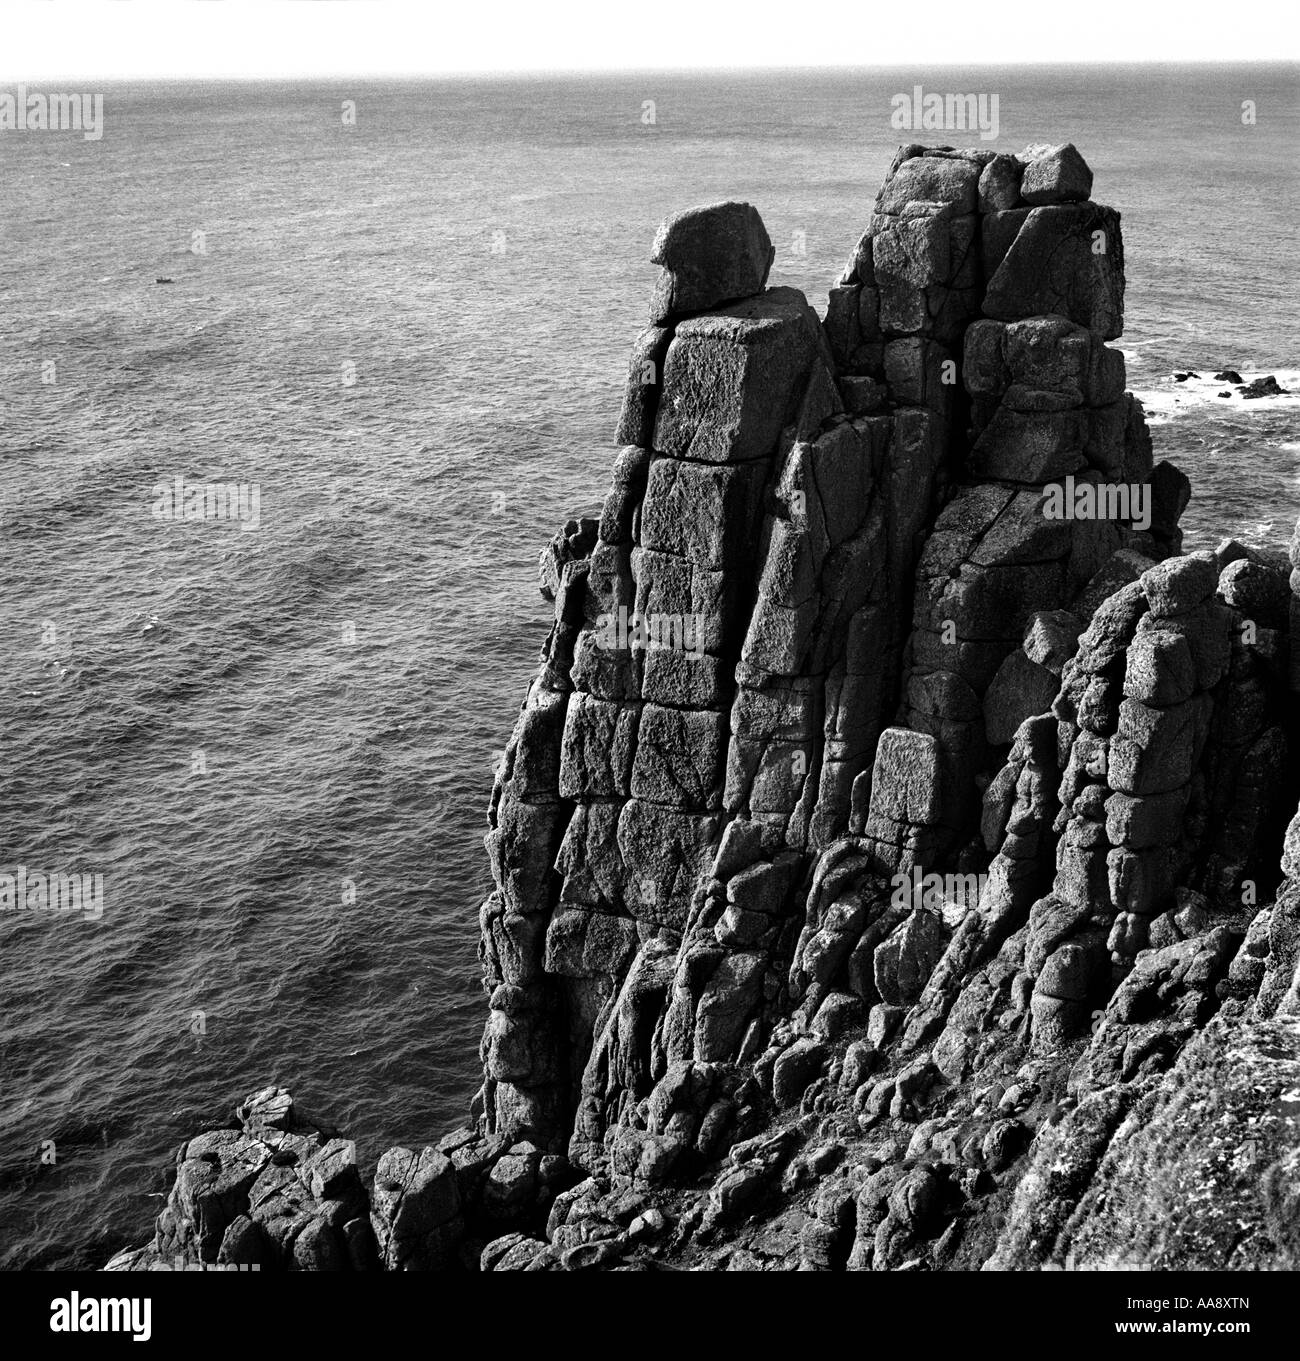 L'image montre le célèbre rocher formation de Land's End, Cornwall, le long de la south west coast path, Royaume-Uni. Mai 2007 Banque D'Images